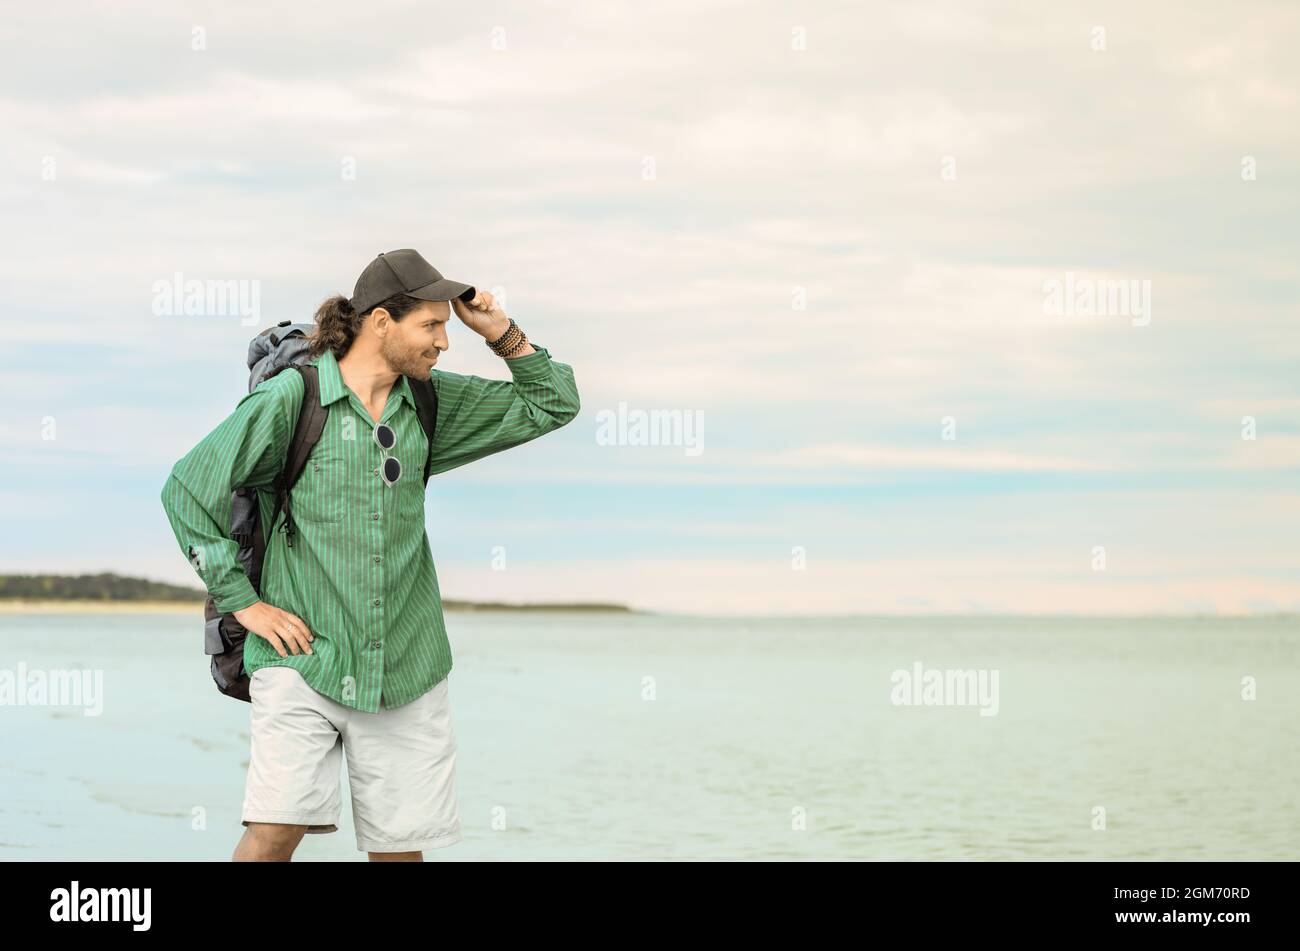 El viajero con su mochila turística está de pie sobre un fondo marino. El hombre está quitándose su gorra de béisbol y mirando a una distancia. Foto de stock